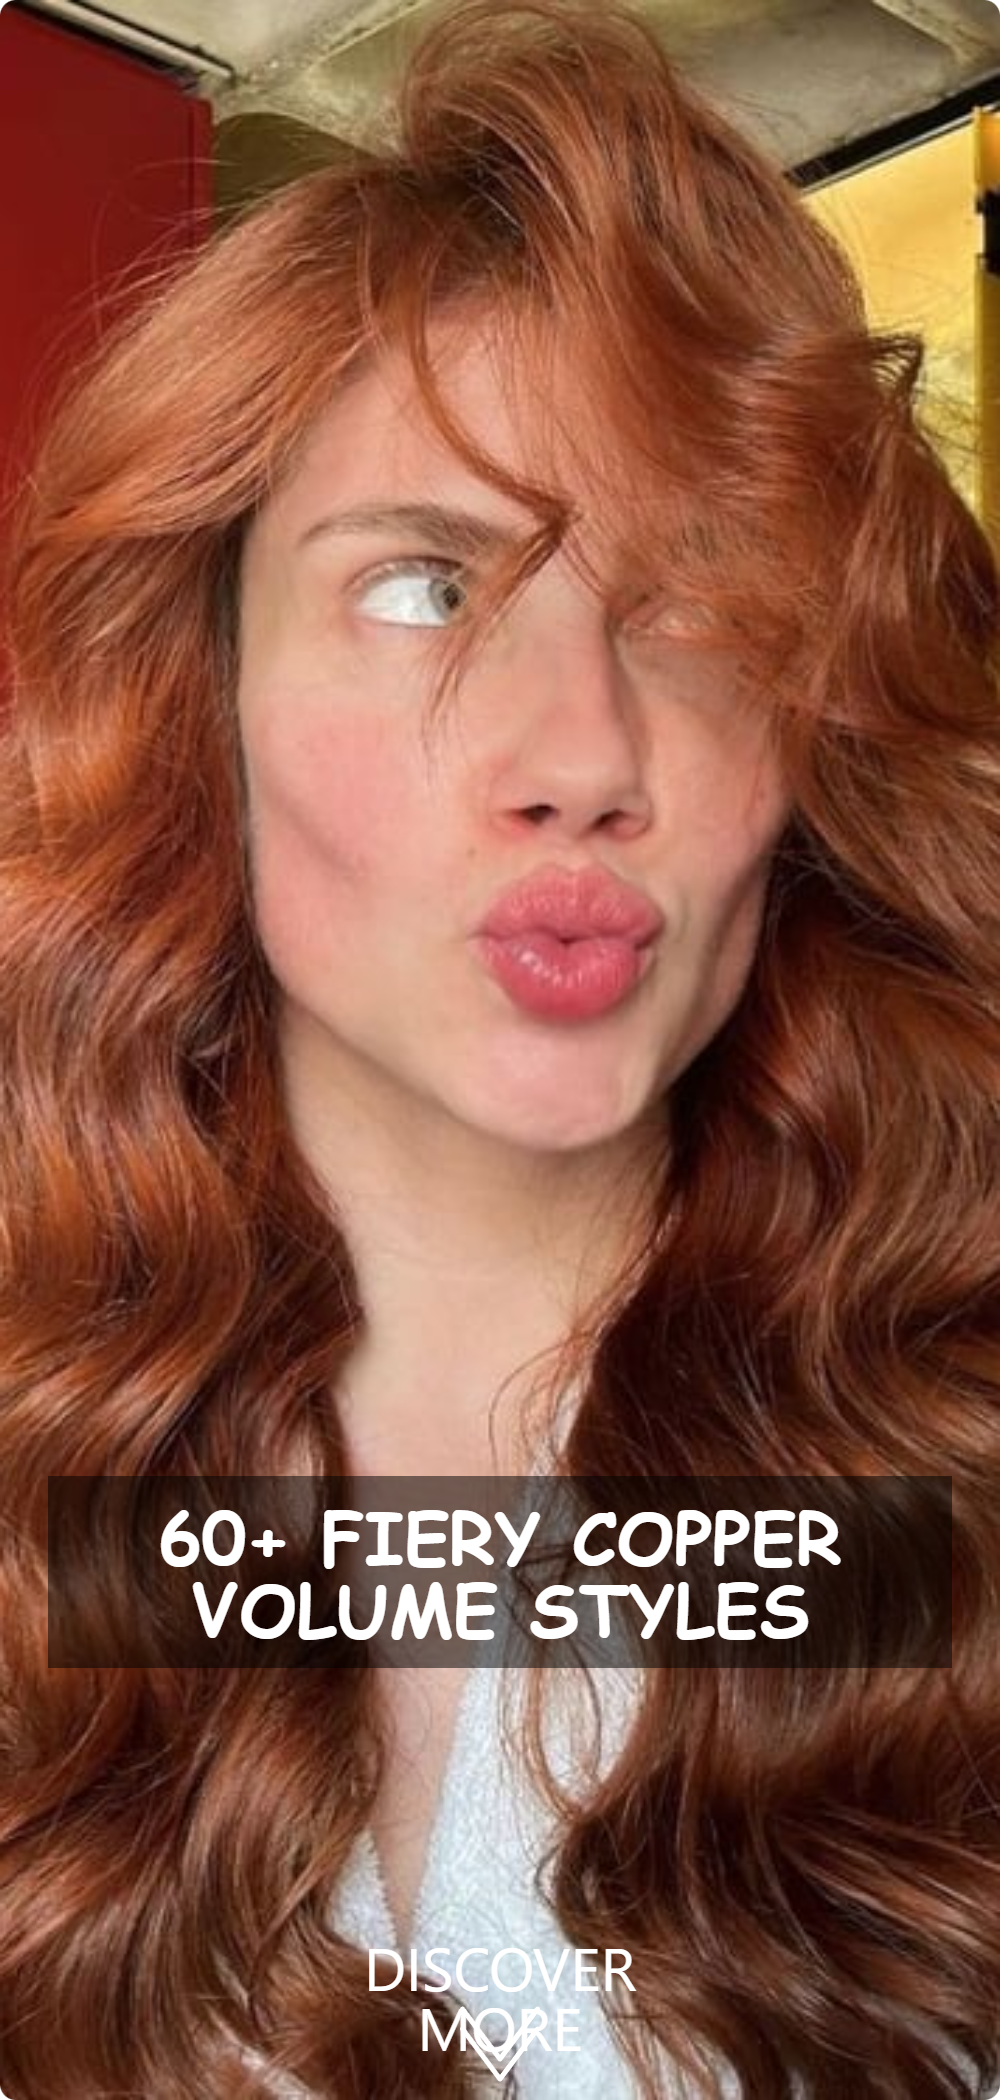 Fiery Copper Volume